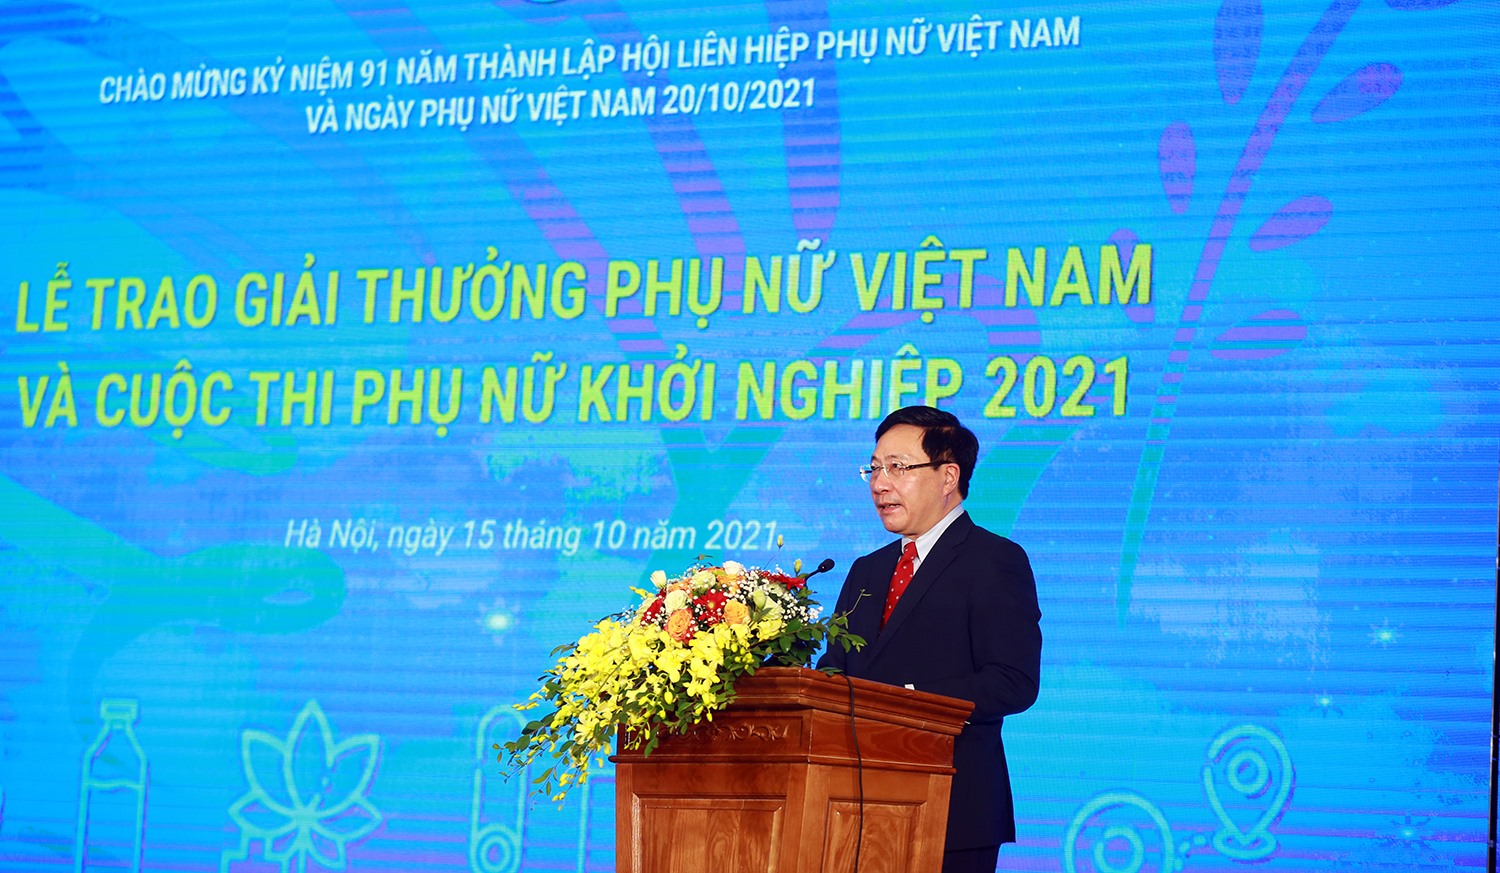 Phó Thủ tướng Thường trực Phạm Bình Minh khẳng định “Giải thưởng Phụ nữ Việt Nam” là minh chứng về sự phát triển không ngừng qua 91 năm của Hội LHPN Việt Nam. Ảnh: VGP/Hải Minh